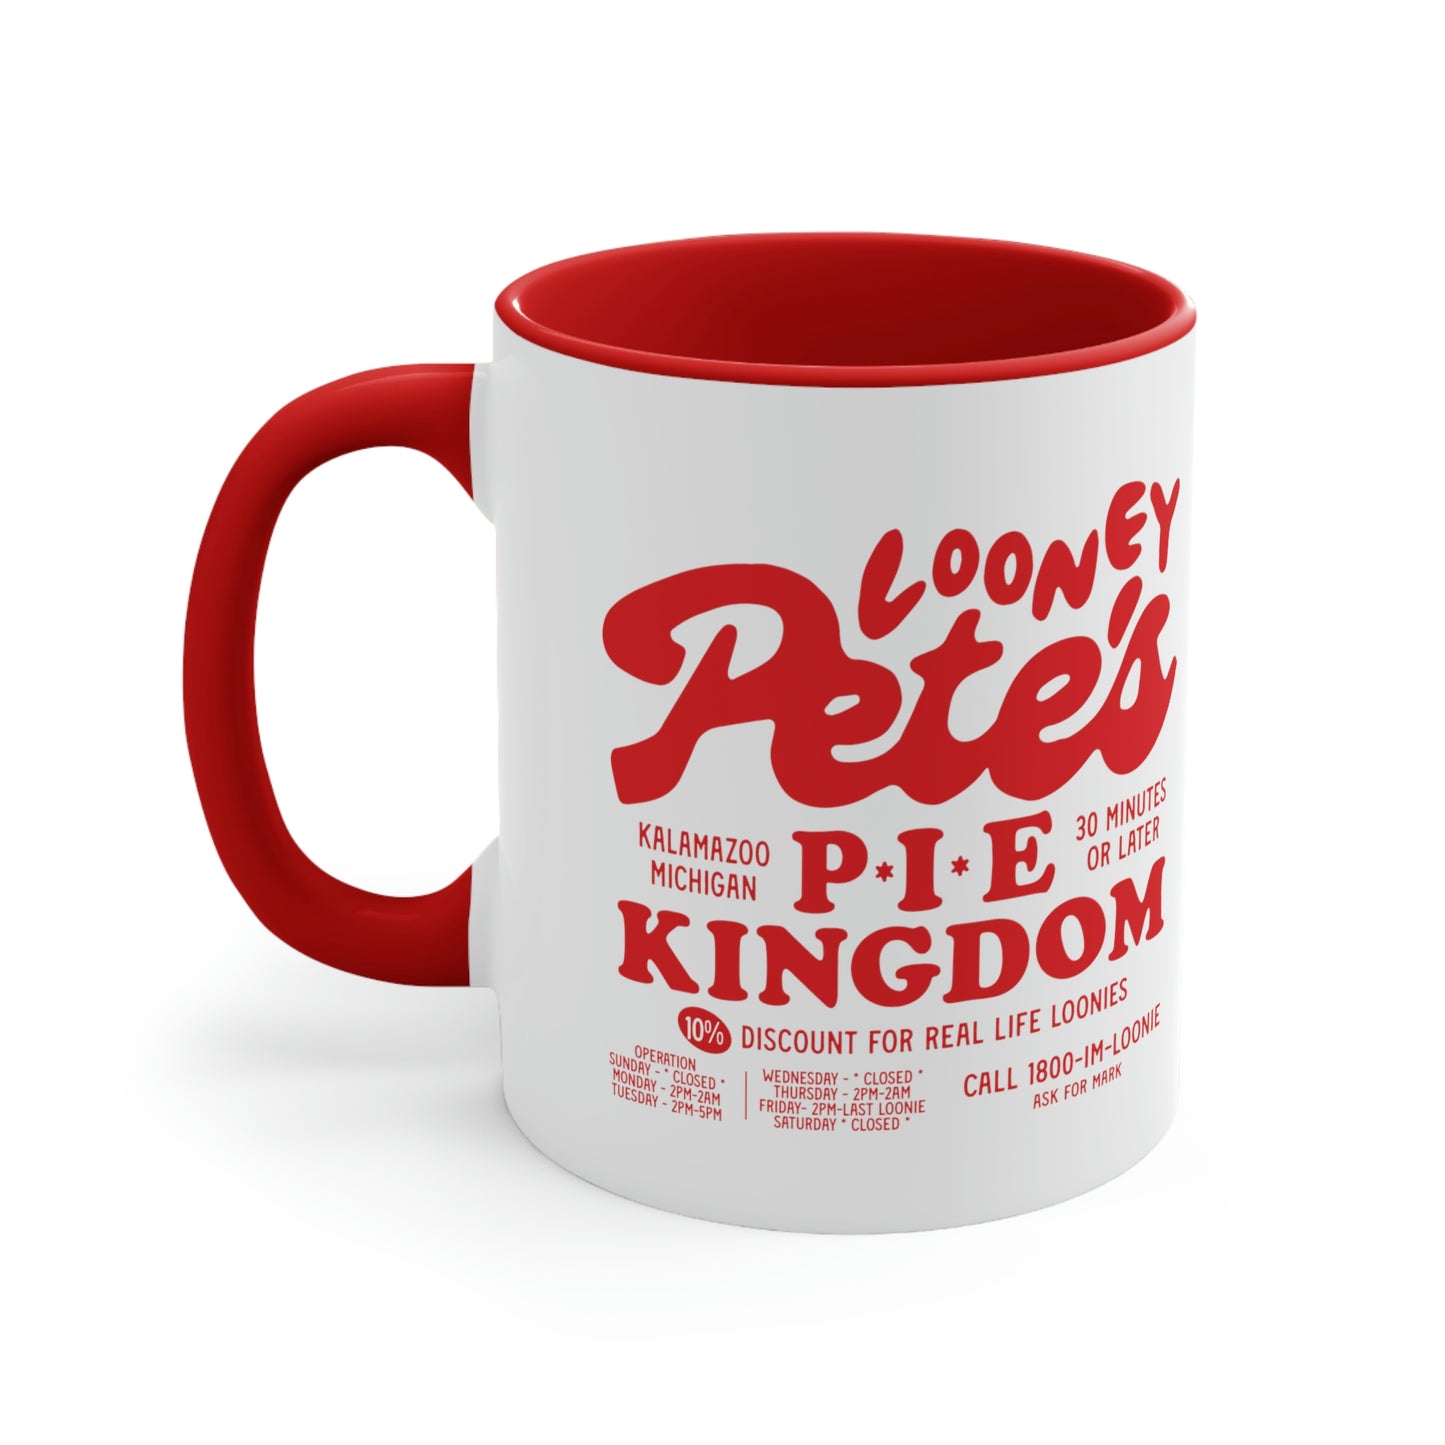 Looney Pete's Pie Kingdom t-shirt classic Coffee Mug, 11oz